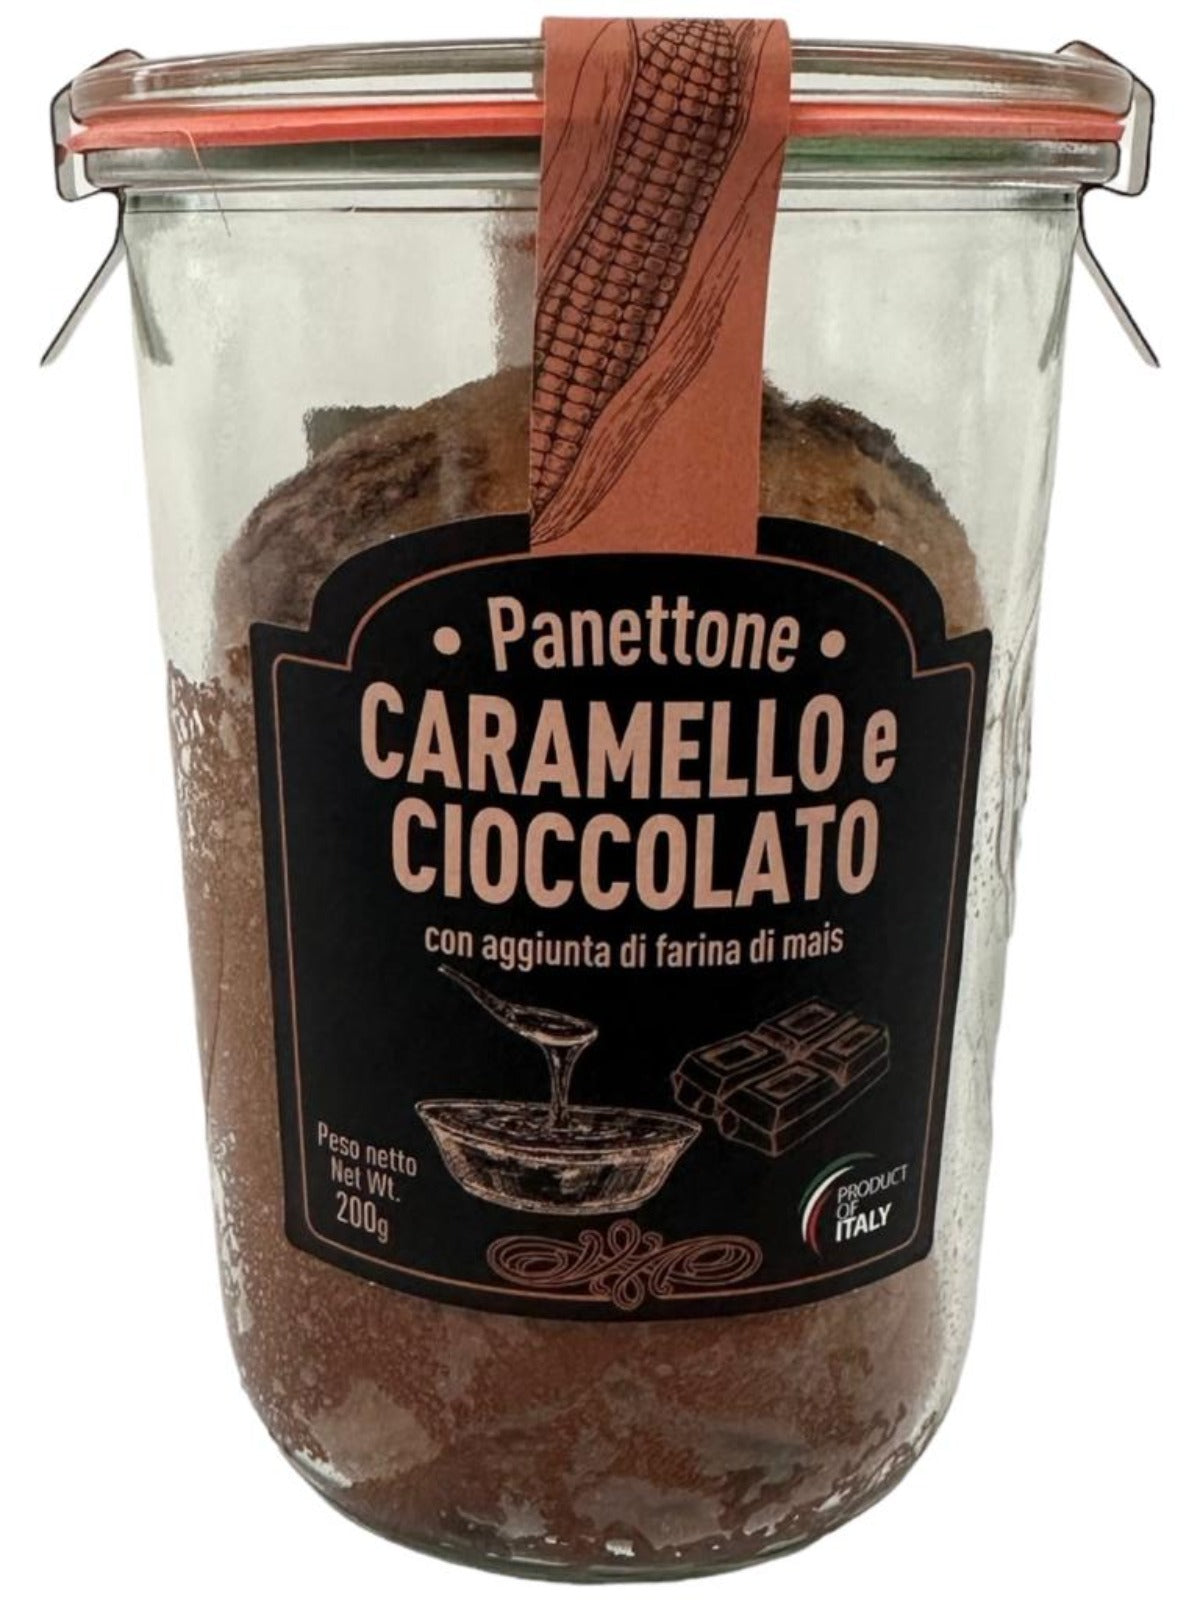 Cordero Panettone Caramello e Cioccolato Caramel and Chocolate Italian Cake 200g